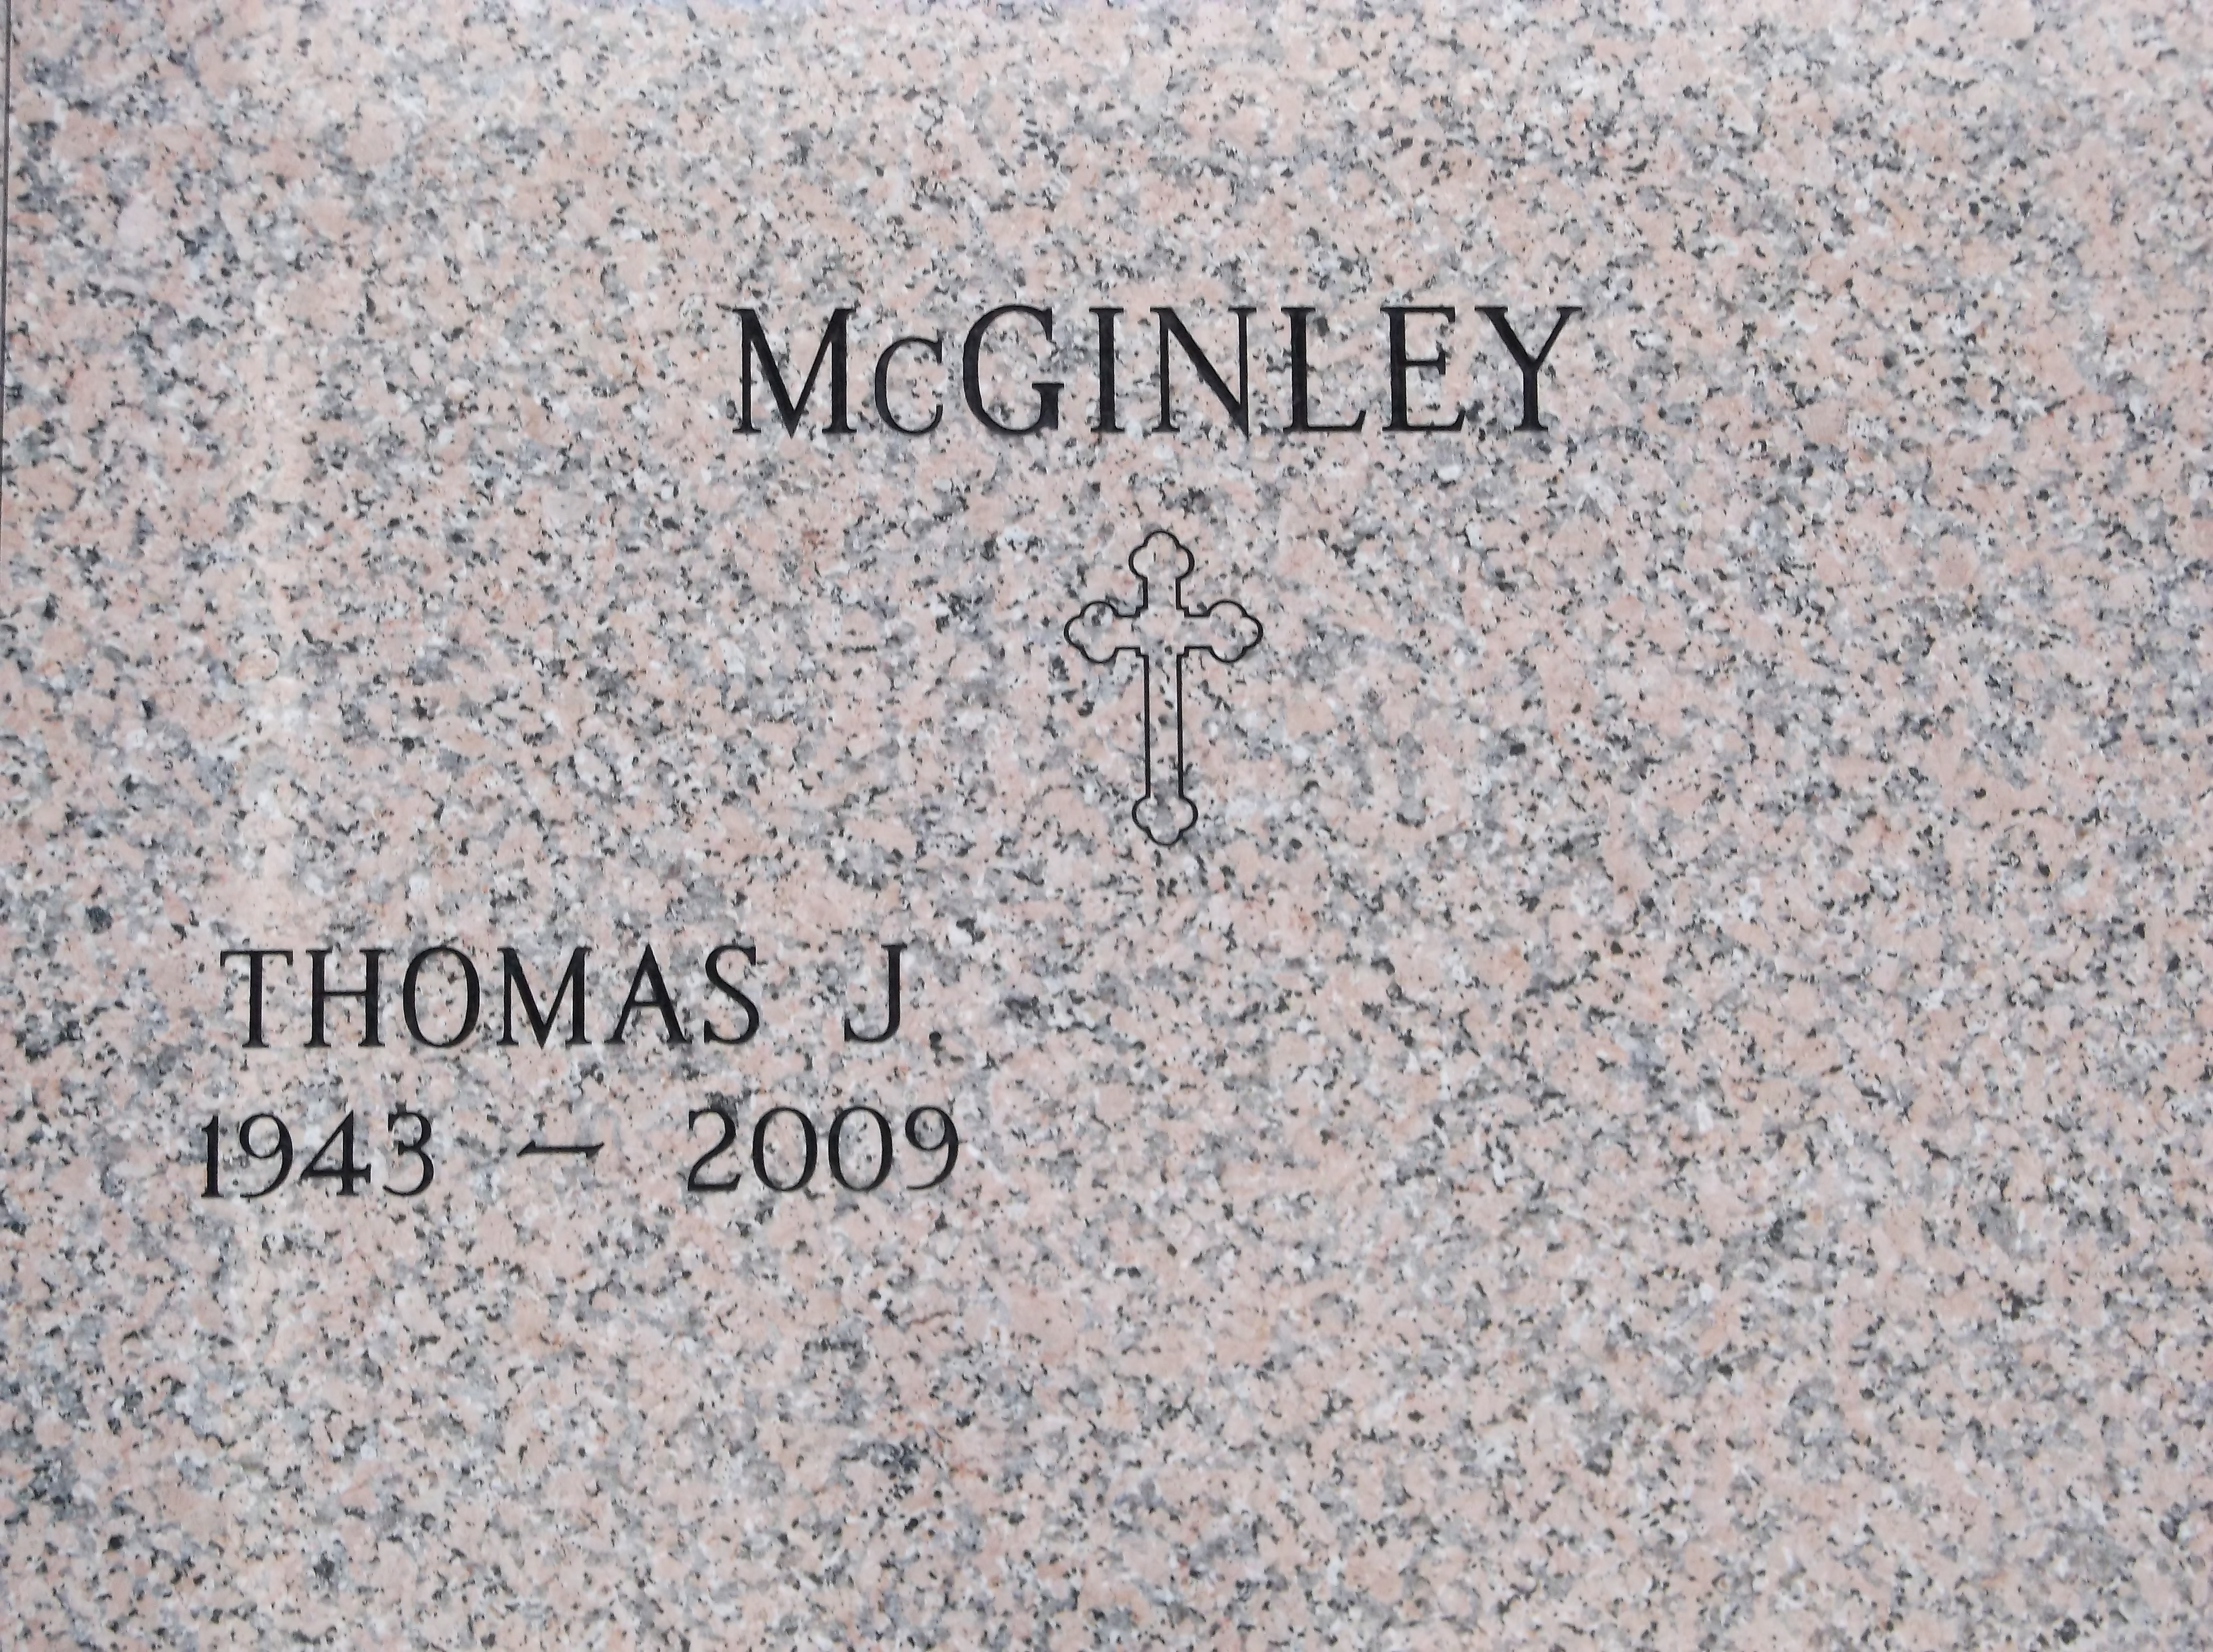 Thomas J McGinley